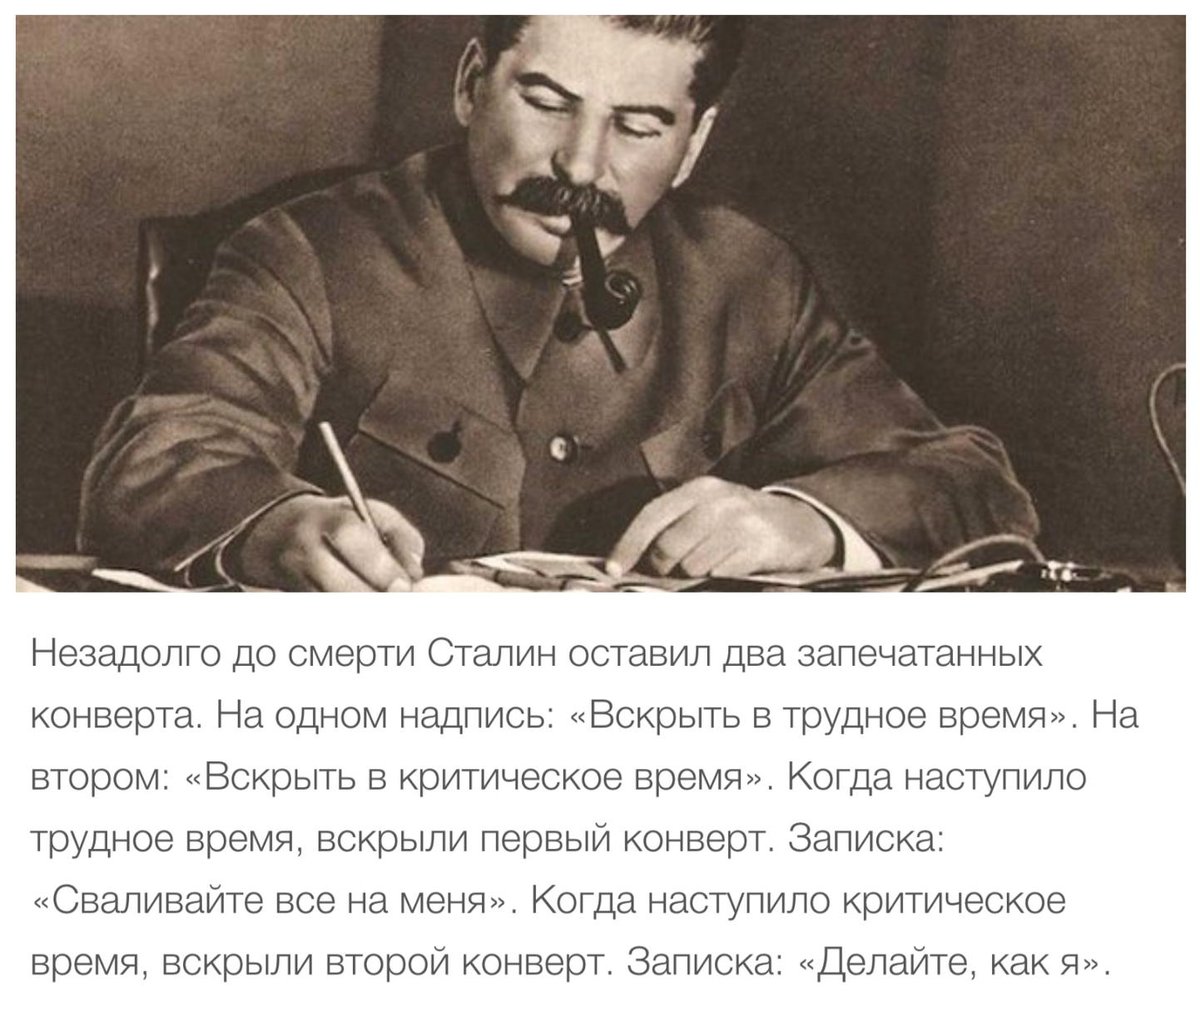 Читать про сталина. Высказывания Сталина. Шутки Сталина. Фразы Сталина. Сталин о детях цитаты.